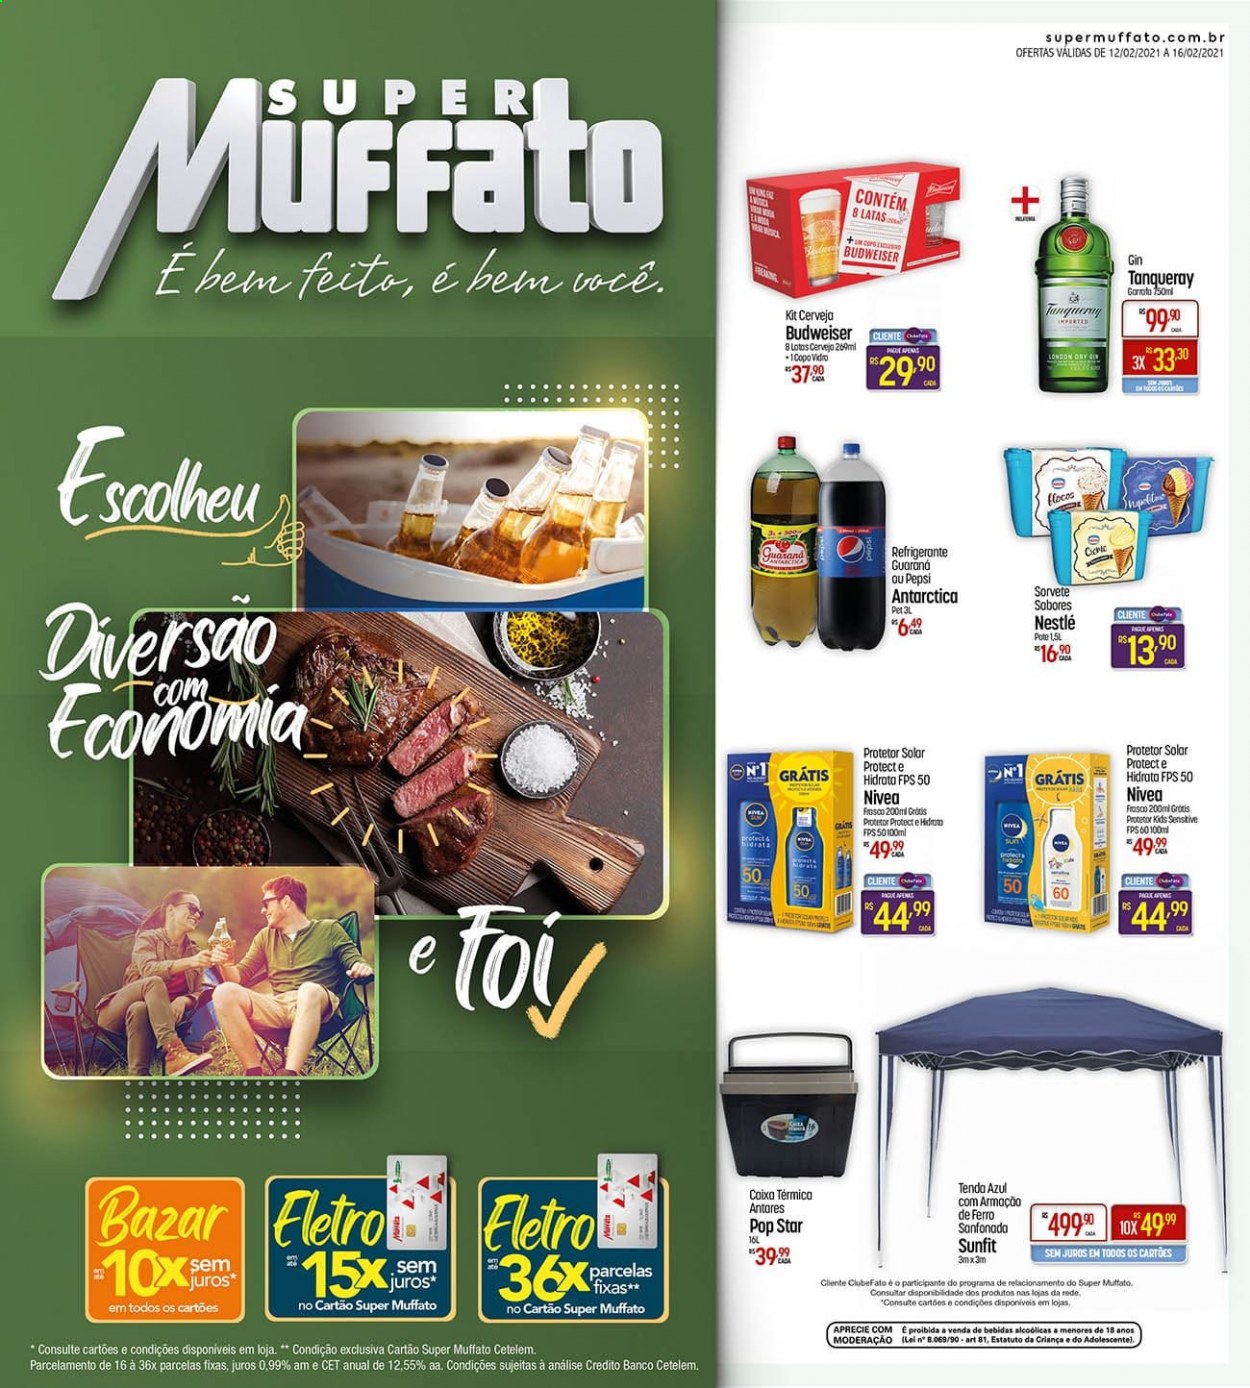 thumbnail - Folheto Super Muffato - 12/02/2021 - 16/02/2021 - Produtos em promoção - Budweiser, Antárctica, sorvete, Nestlé, flocos, Pepsi, refrigerante, gin, Nivea, creme solar. Página 1.